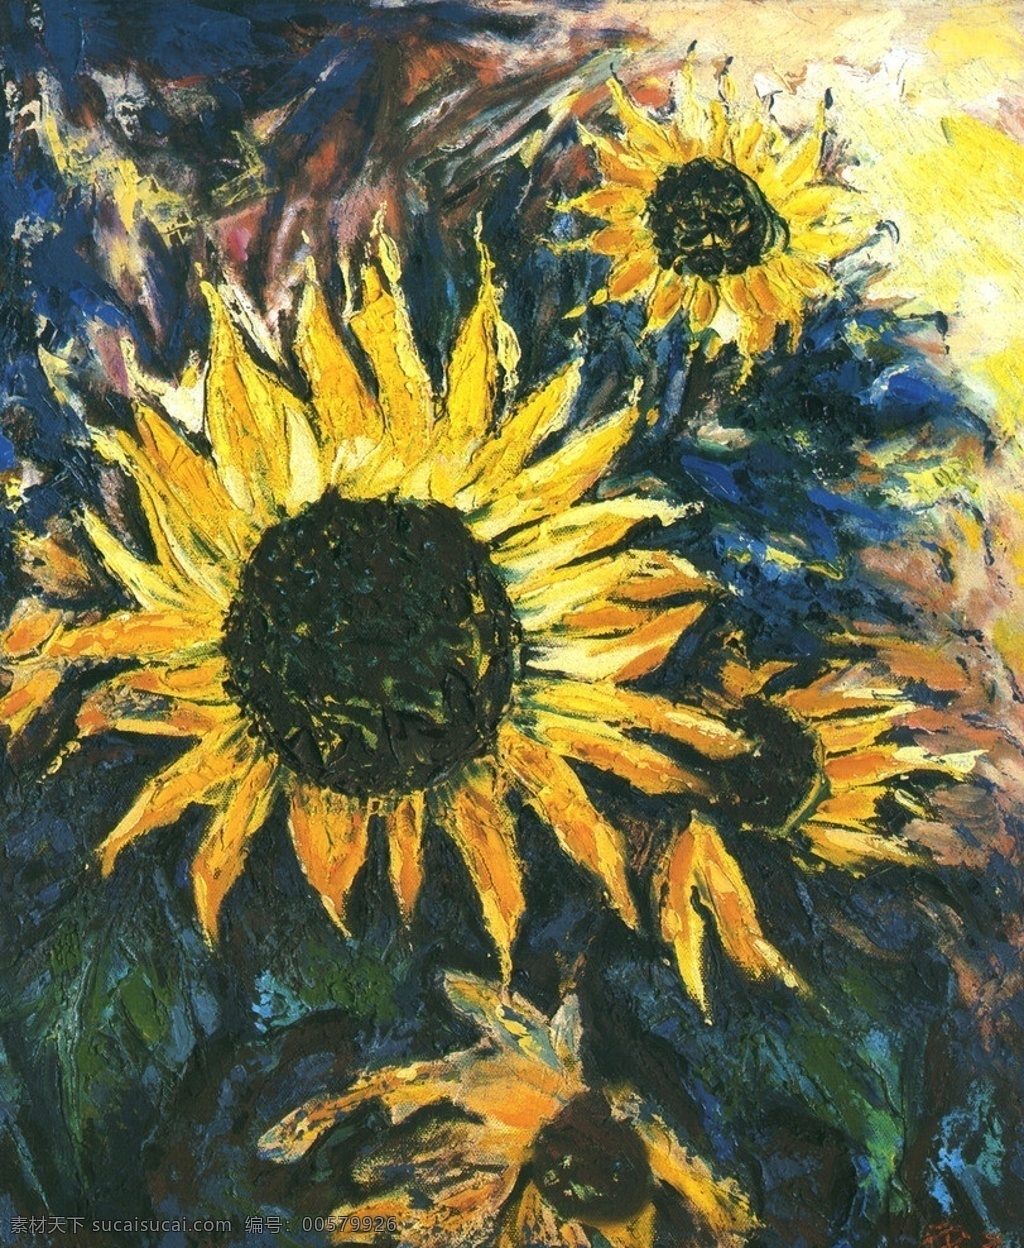 油画设计 油画 向日葵 花 花朵 绿叶 黄色的花 黄色向日葵 唯美桌面壁纸 广告设计素材 绘画书法 文化艺术